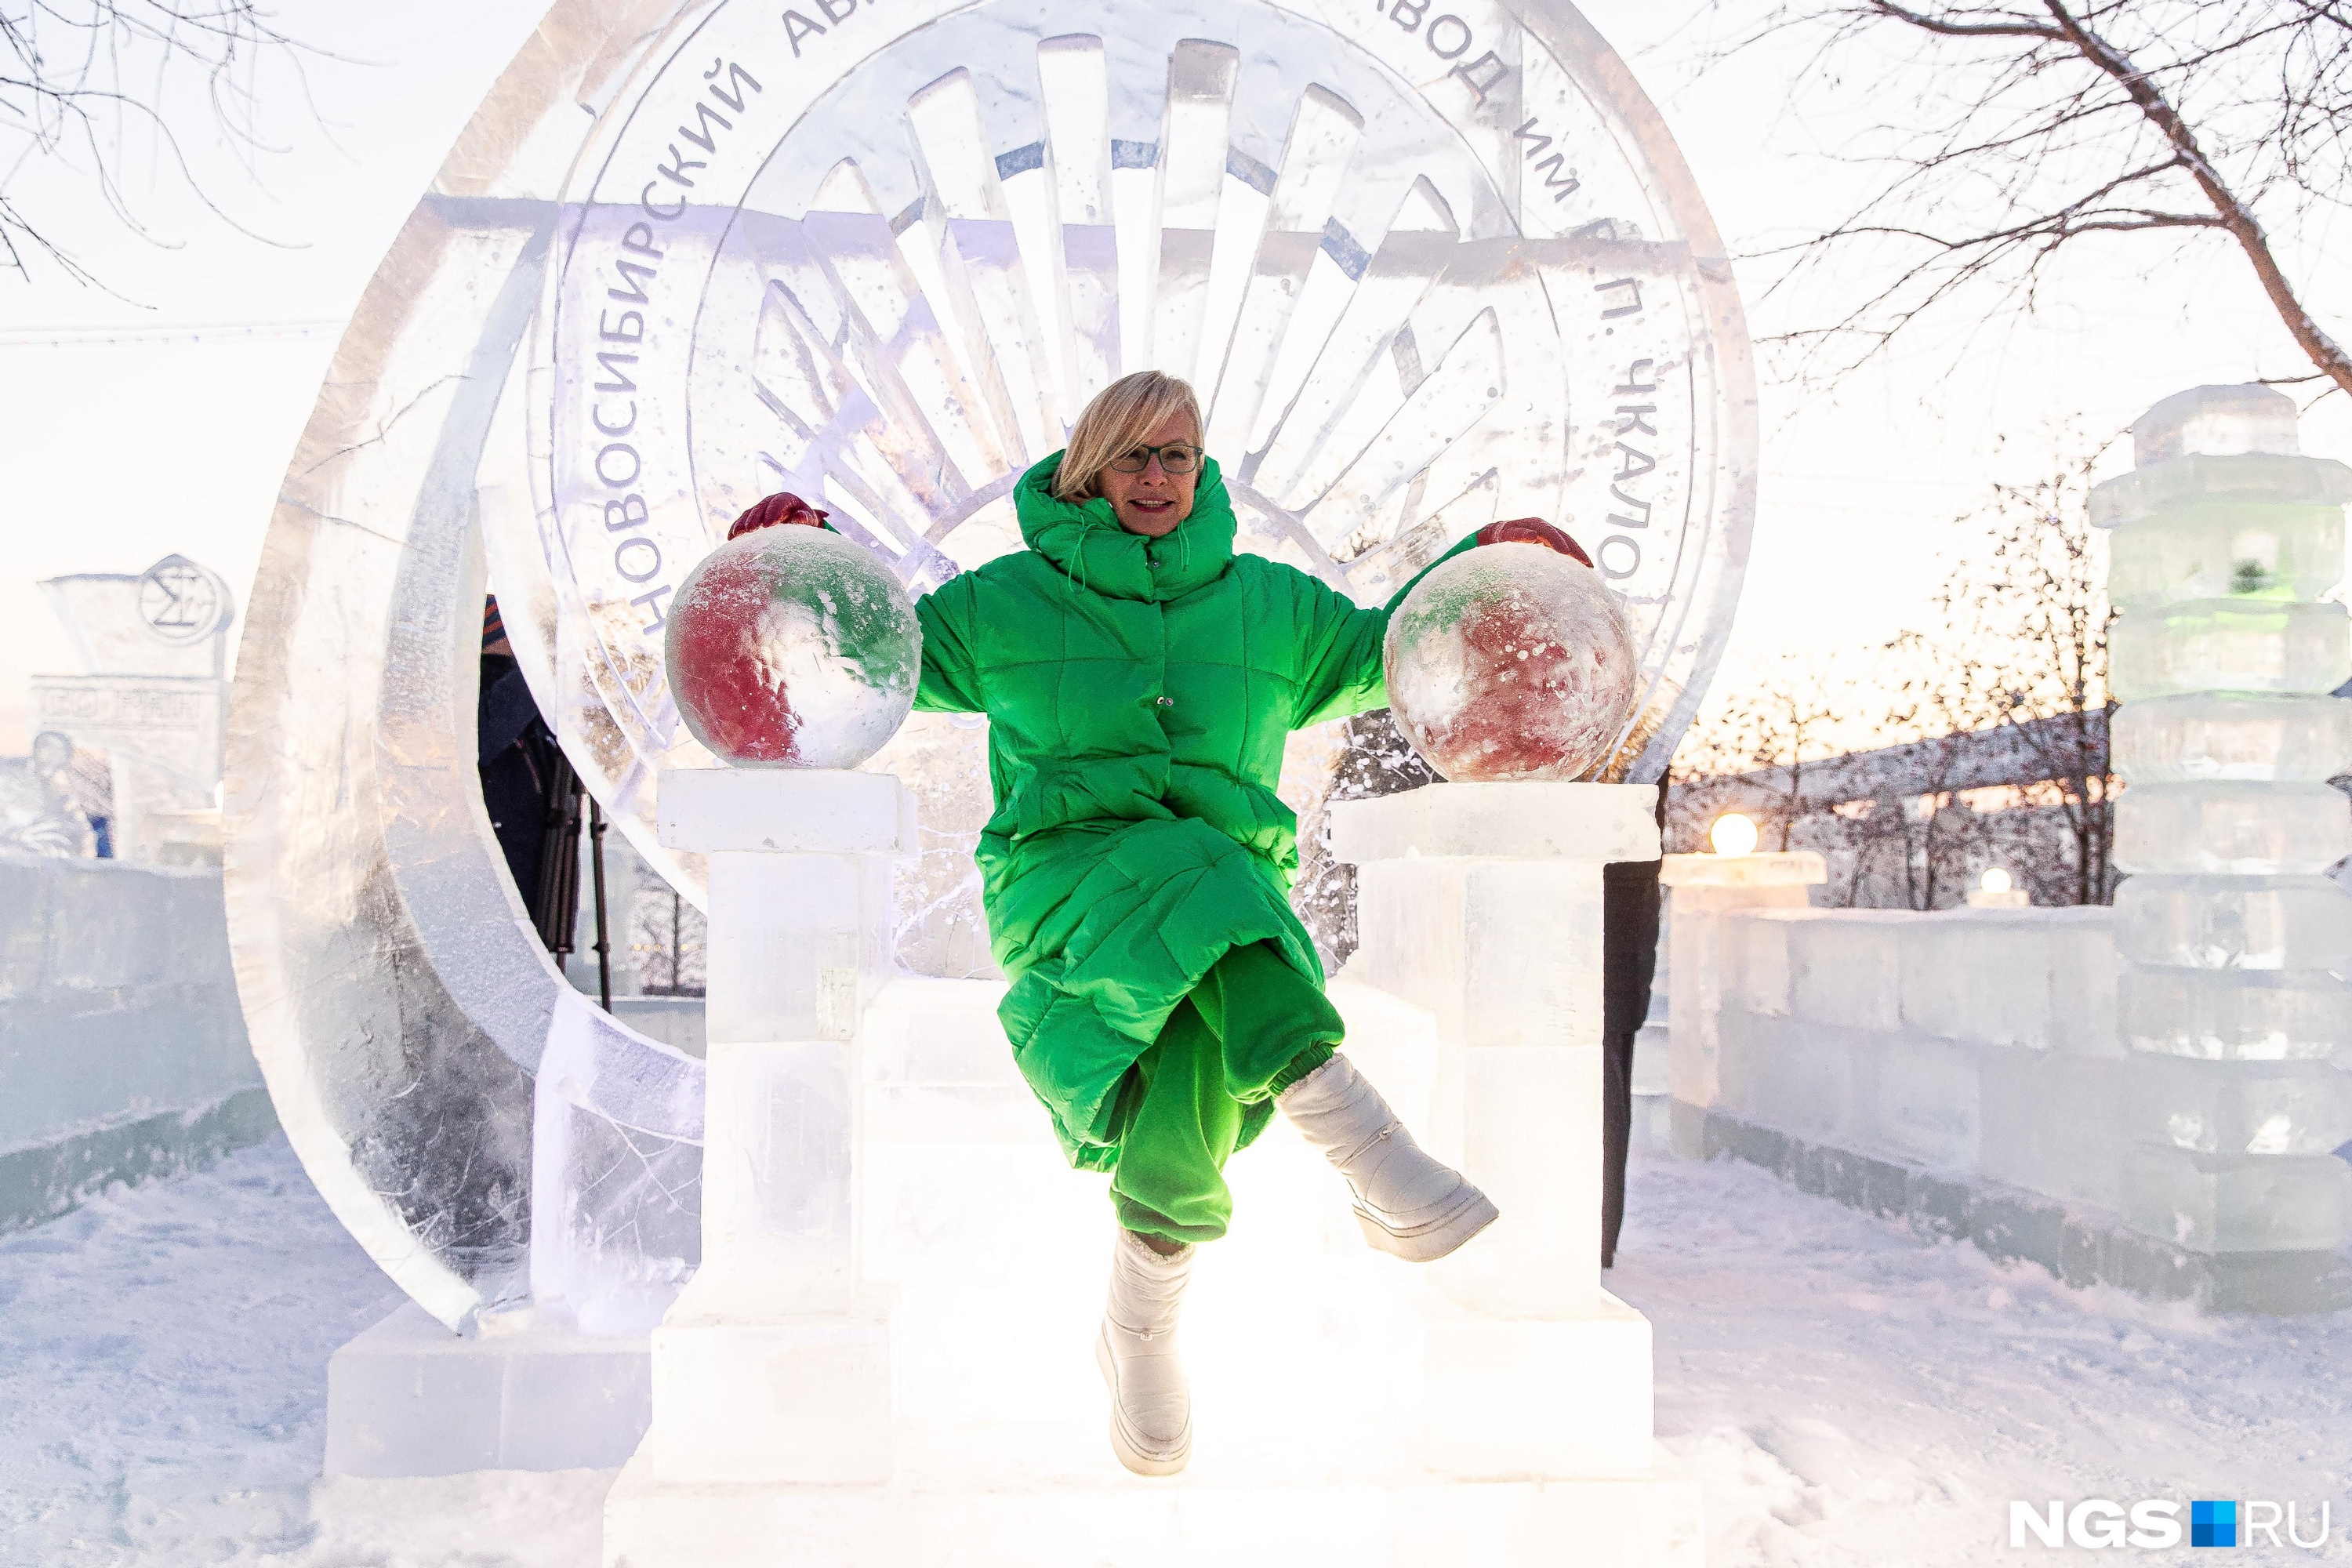 Прошедшей зимой Новосибирск был Новогодней столицей России. А у Анны Терешковой яркий зеленый пуховик